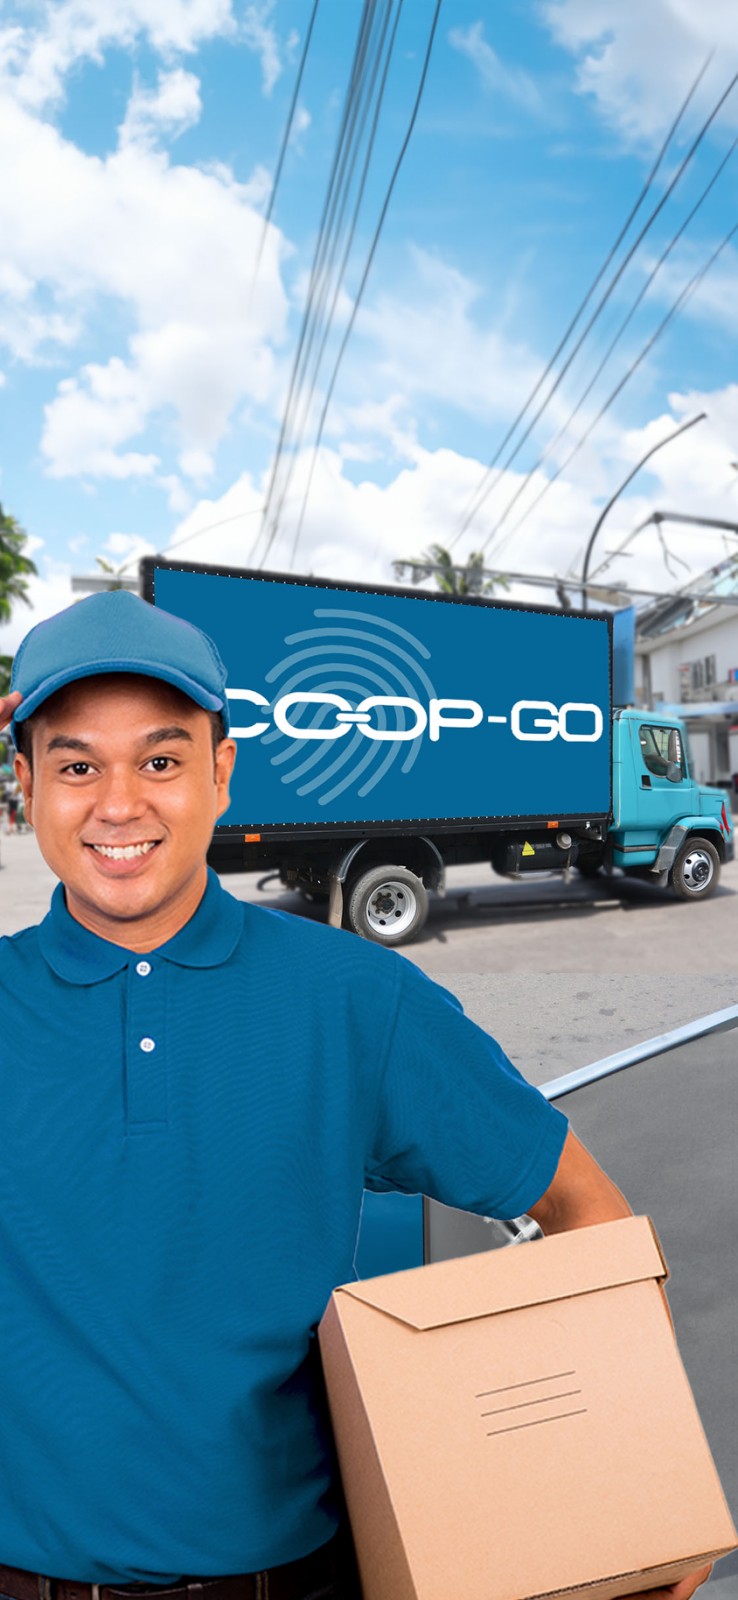 Coop-Go